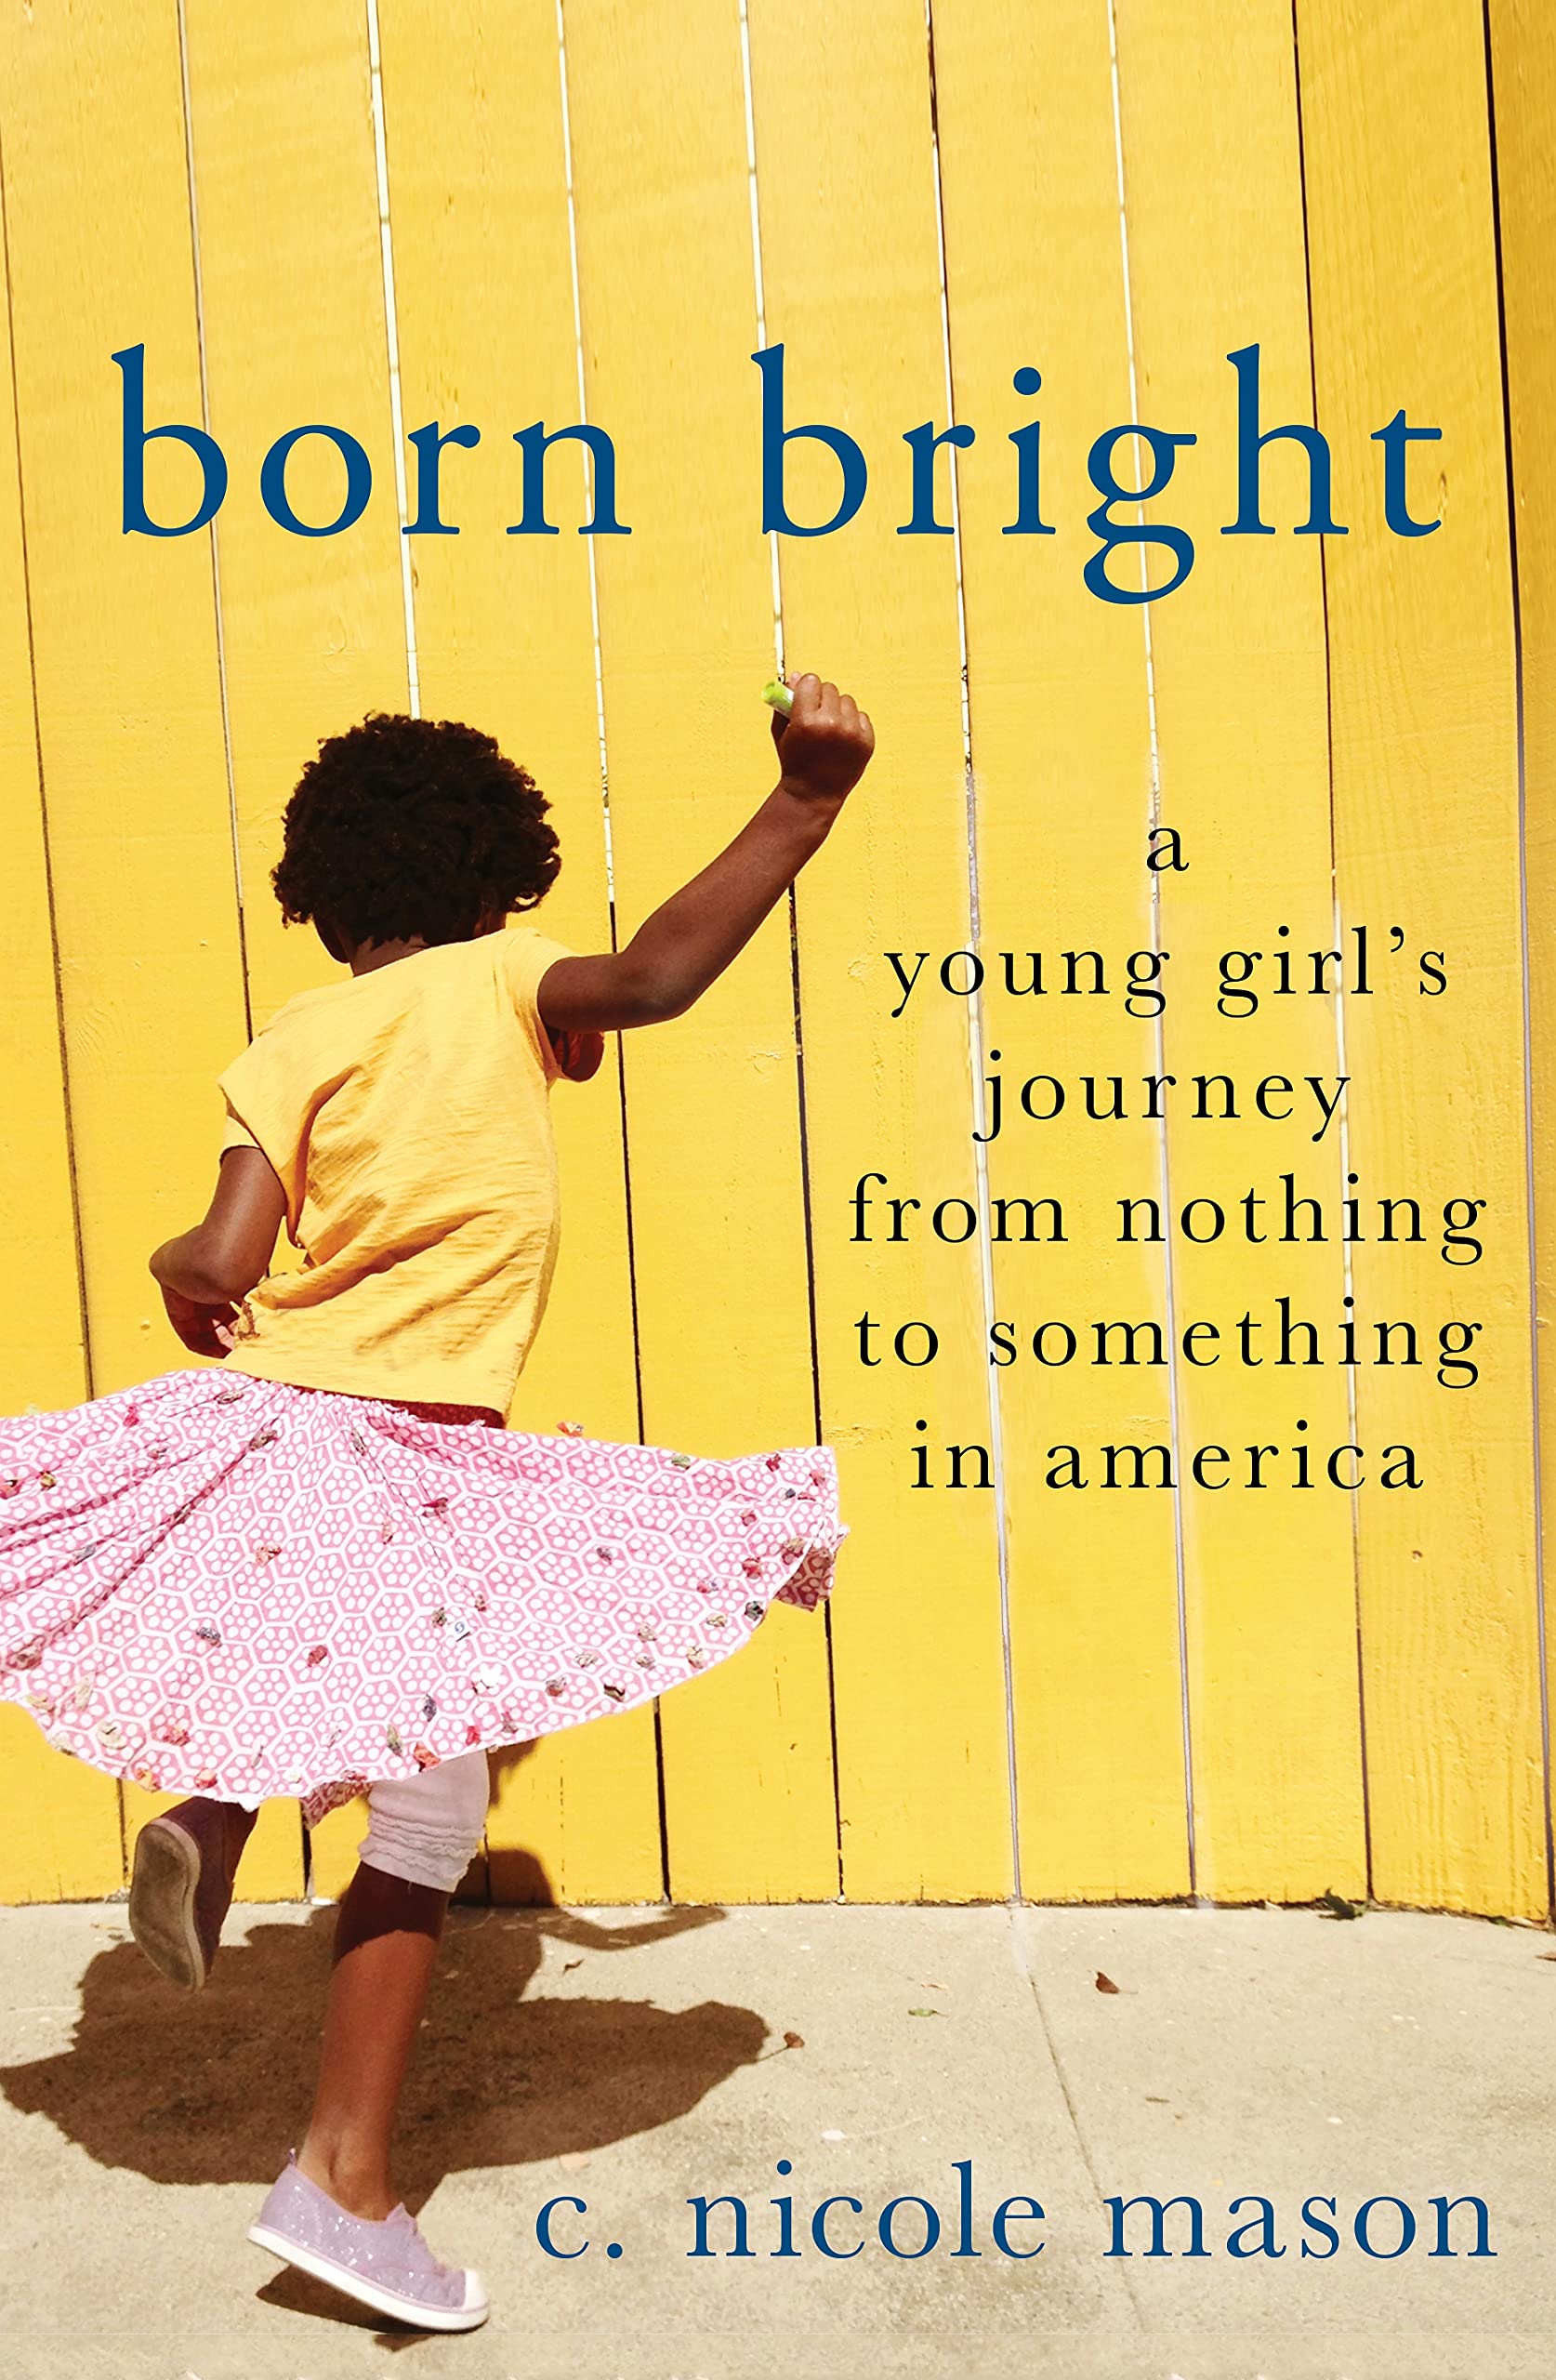 Image for "Born Bright"